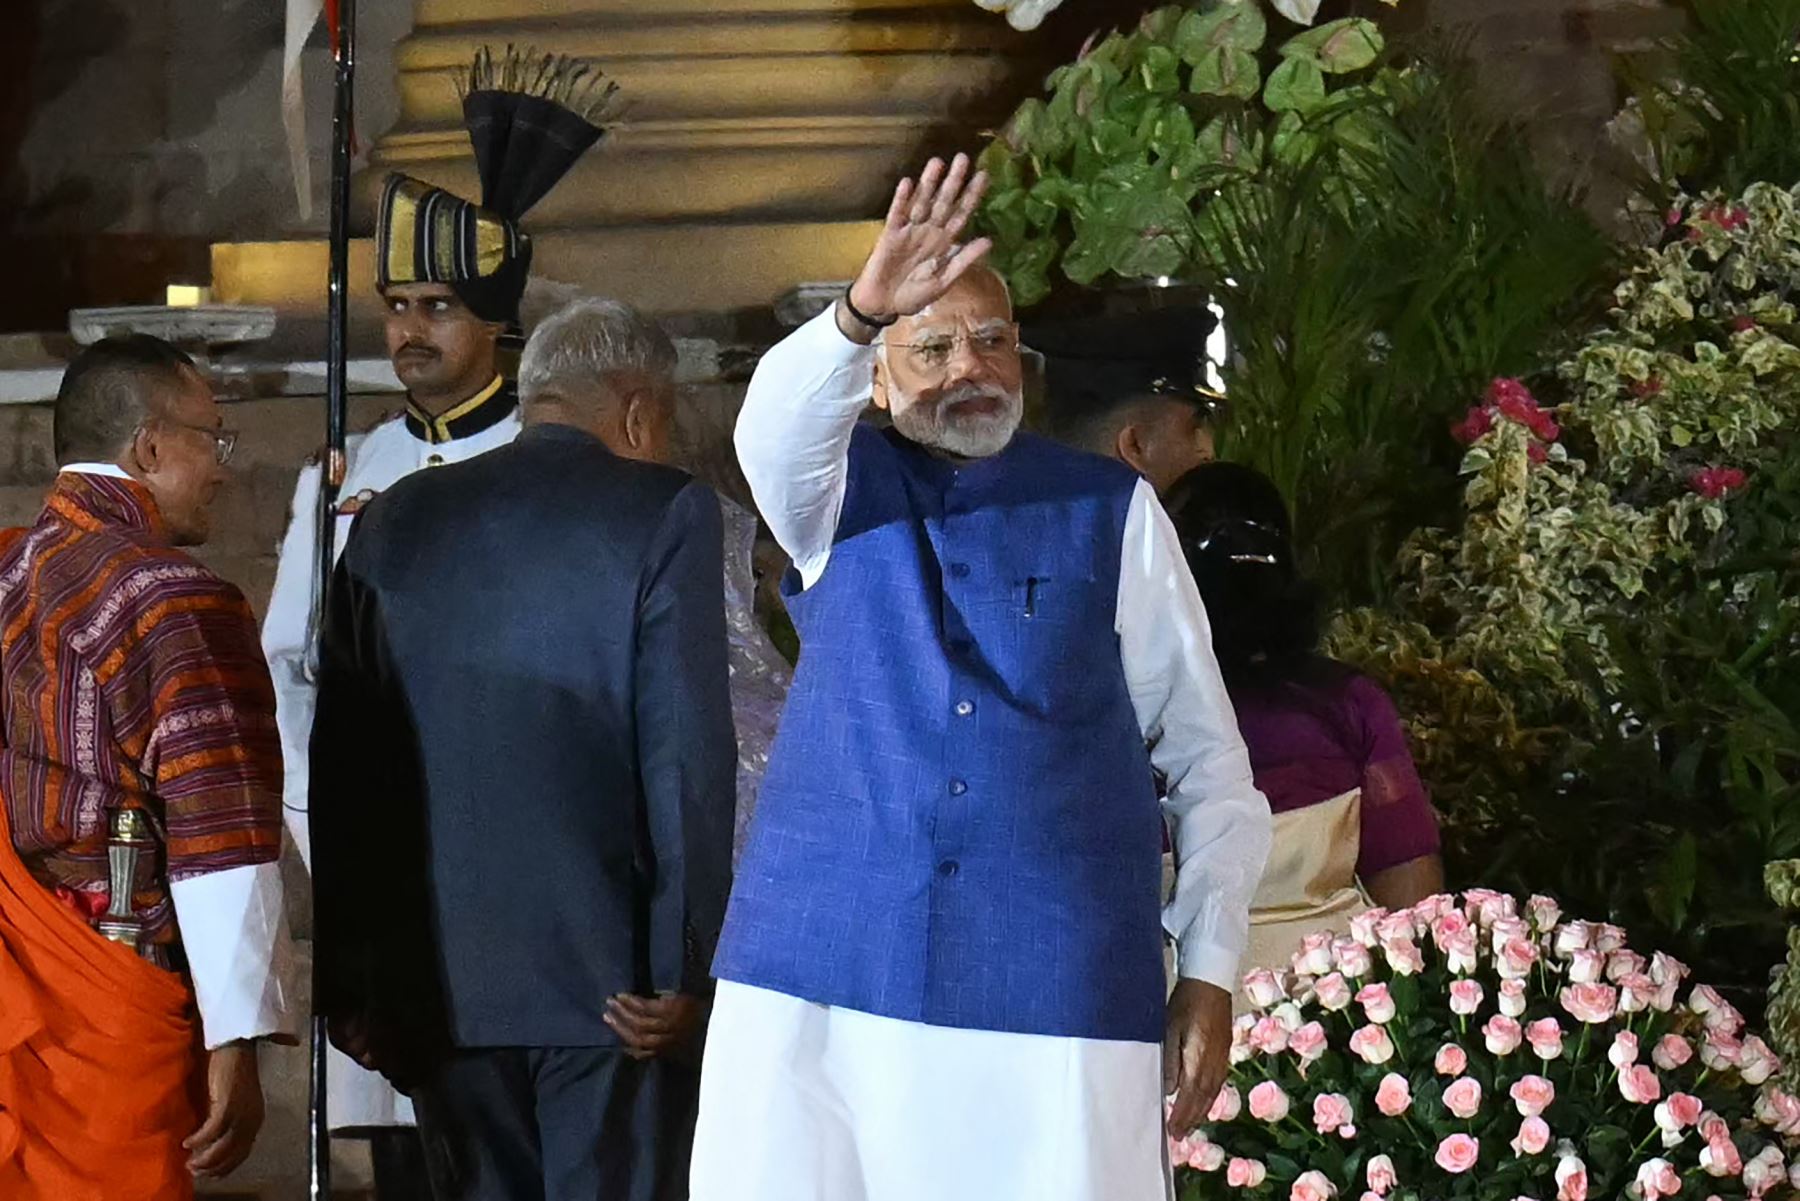 El recién juramentado primer ministro de la India, Narendra Modi , hace gestos ante la reunión durante la ceremonia de juramento en el palacio presidencial Rashtrapati Bhavan en Nueva Delhi .
Foto: AFP